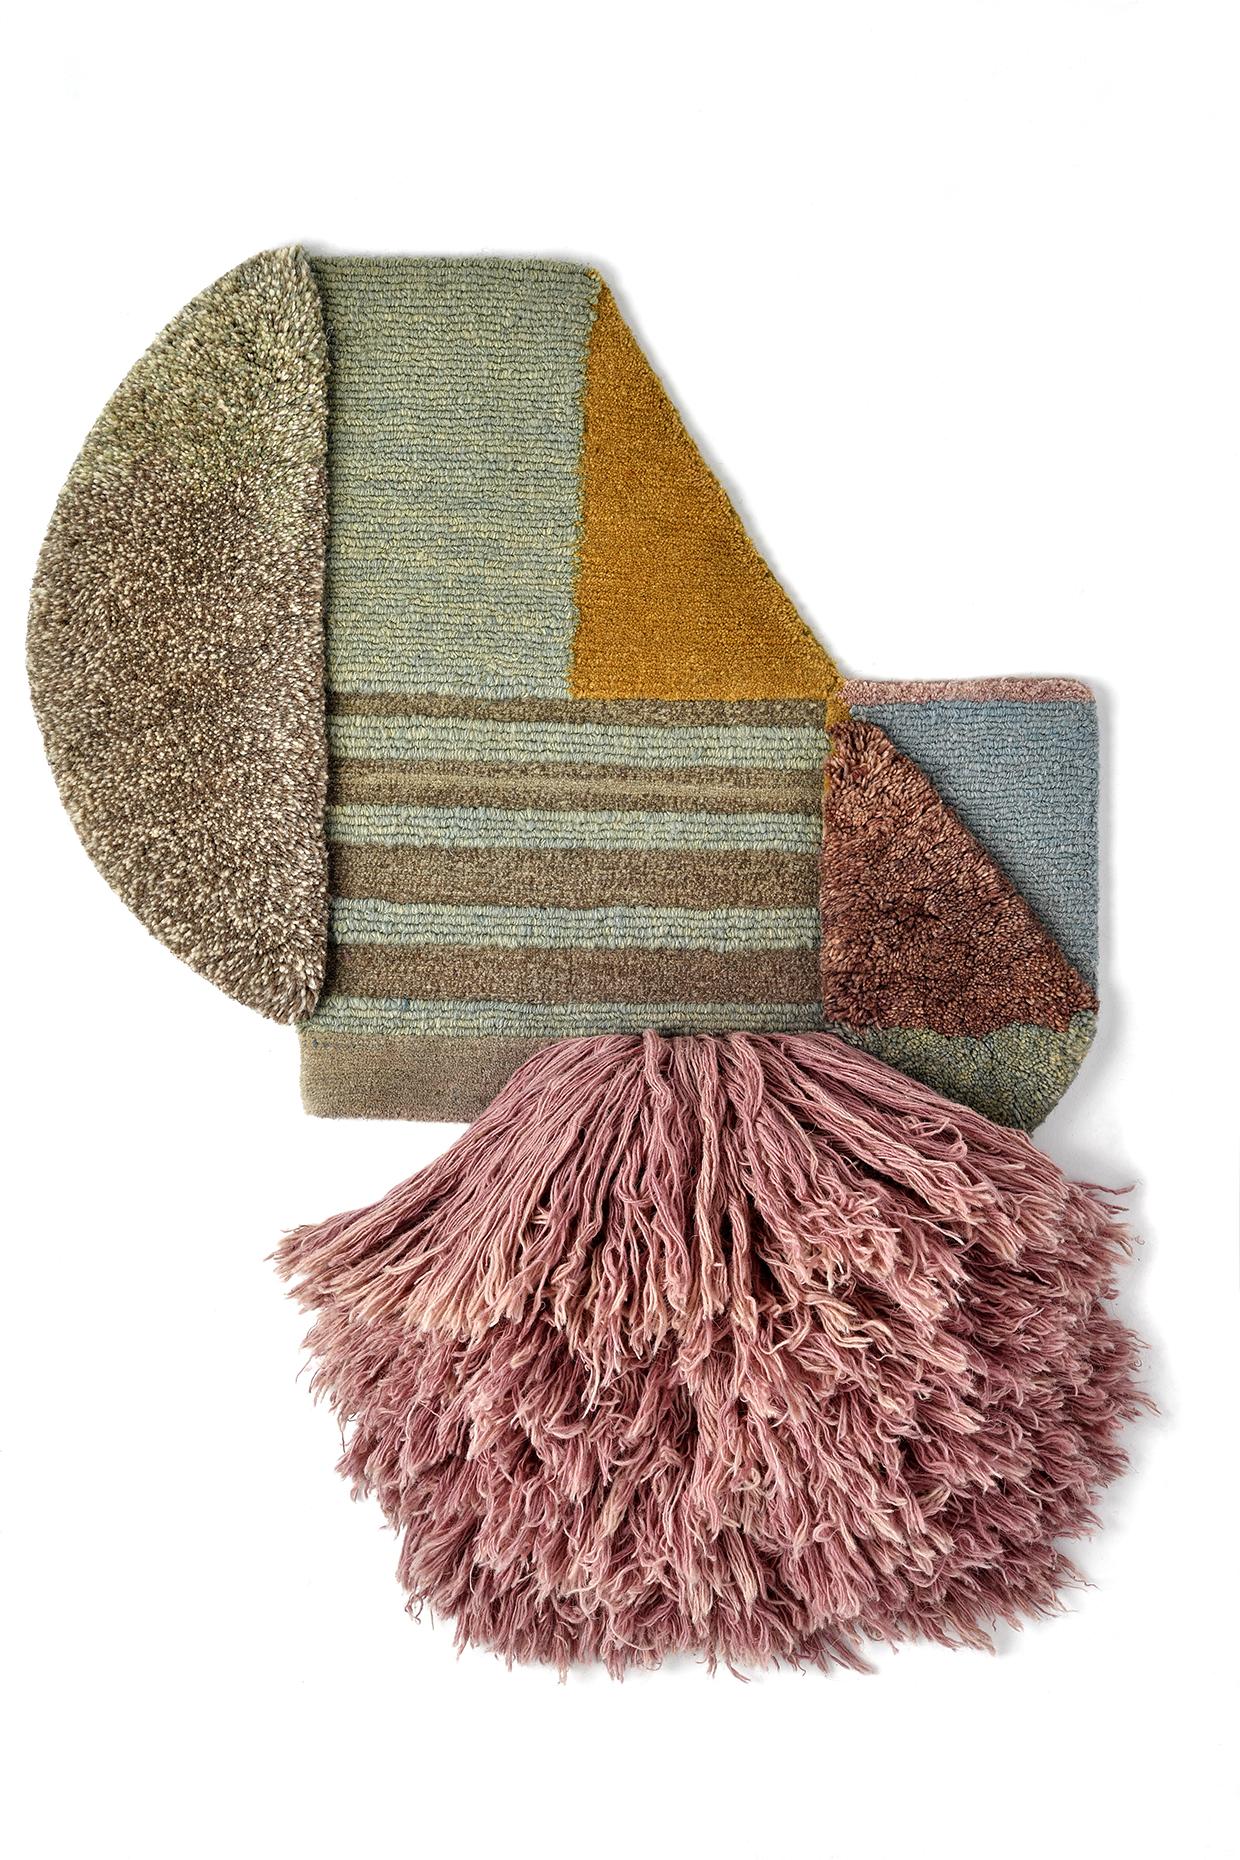 No. 217 Affiche textile nouée à la main par Lyk Carpet
Hommage aux femmes du Bauhaus
Dimensions : L 48 x L 58 cm : L 48 x L 58 cm.
MATERIAL : 100% laine des hauts plateaux tibétains, laine vierge peignée et filée à la main, laine naturelle teintée